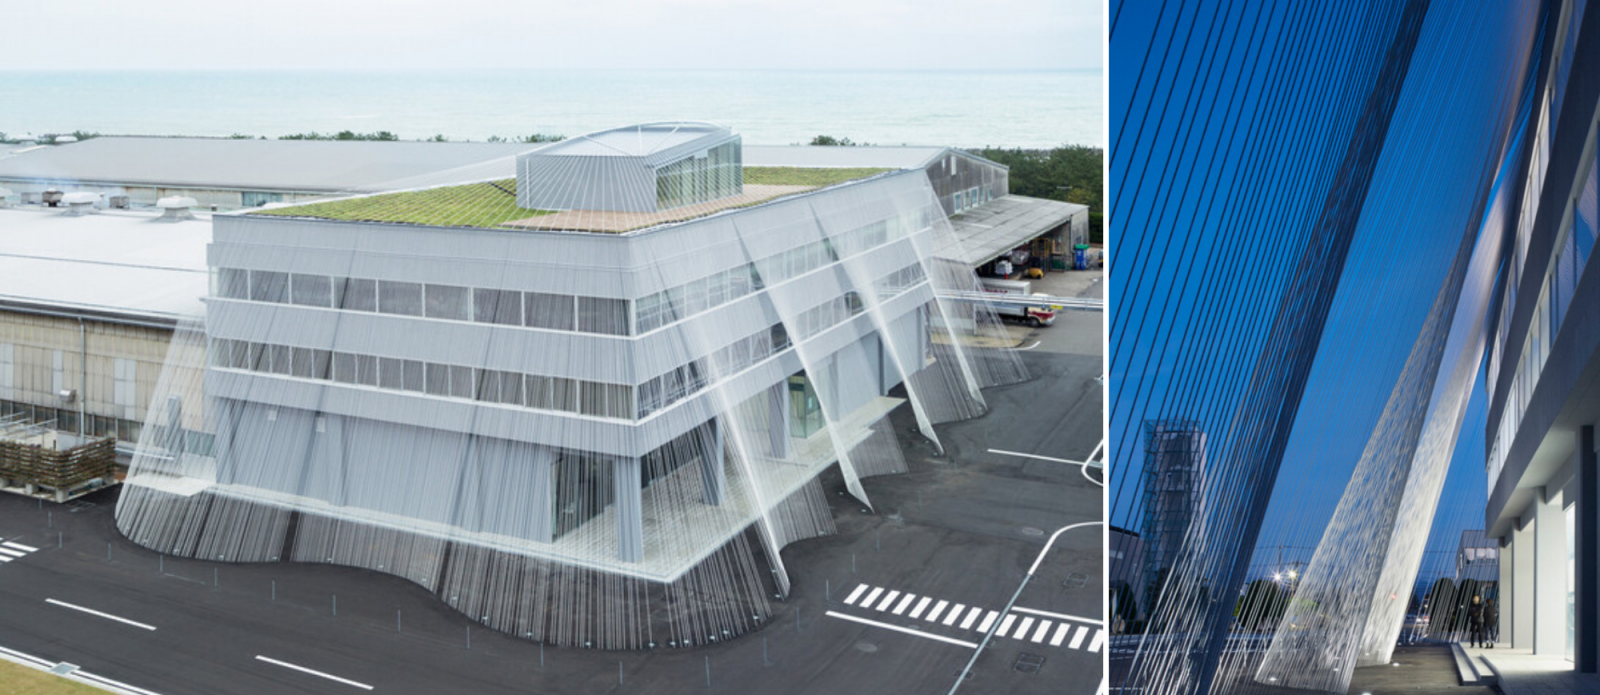 Kengo Kuma, Nhật Bản sử dụng các sợi carbon để bảo vệ tòa nhà khỏi động đất. (Ảnh: Shinkenchiku, Takumi Ota)